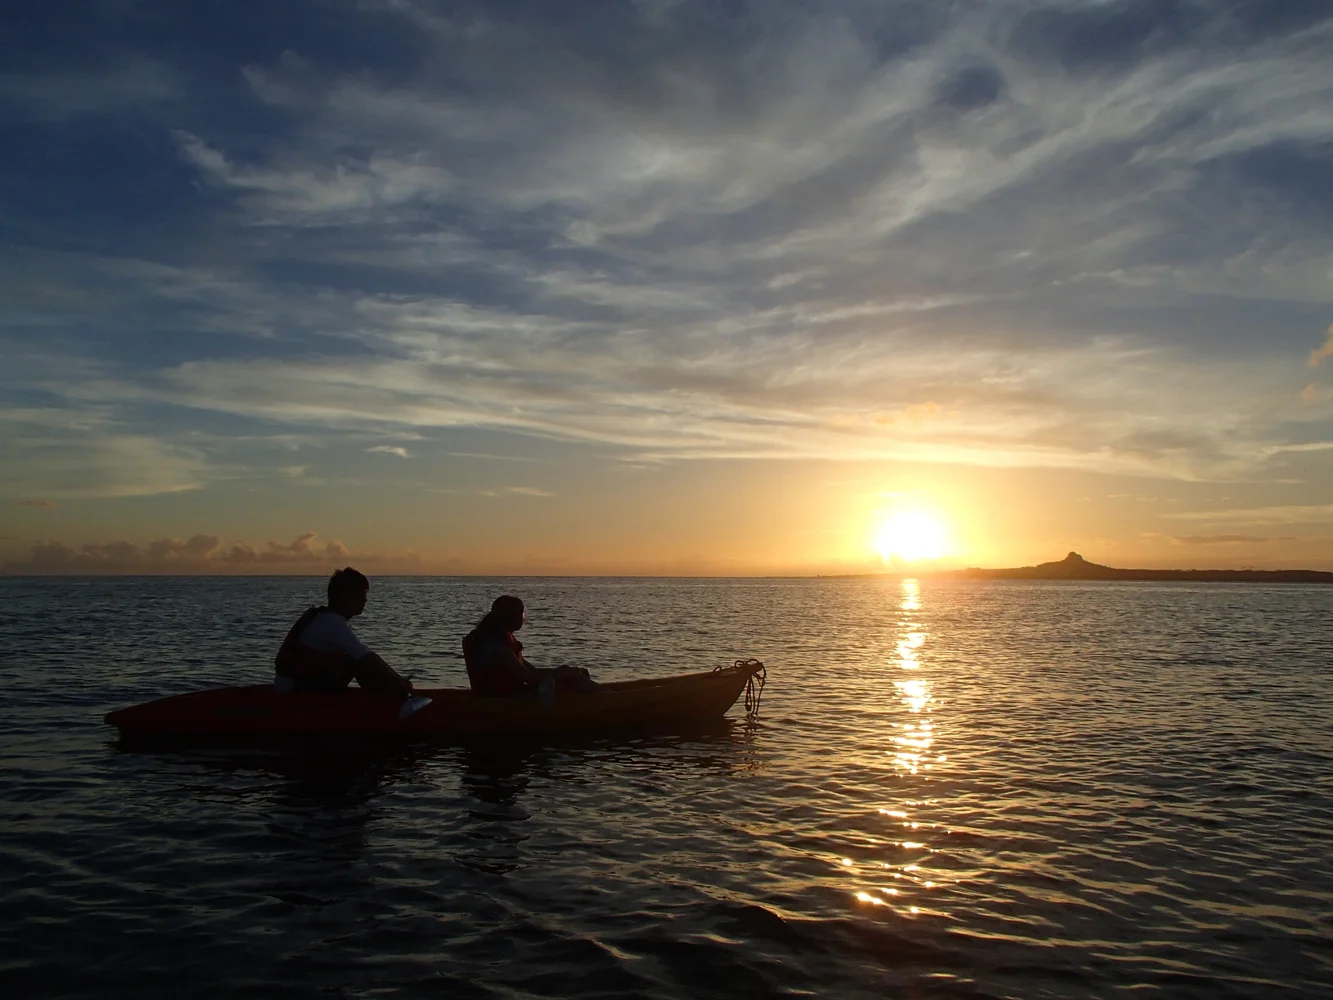 Sunset Kayaking Experience in Bise, Okinawa